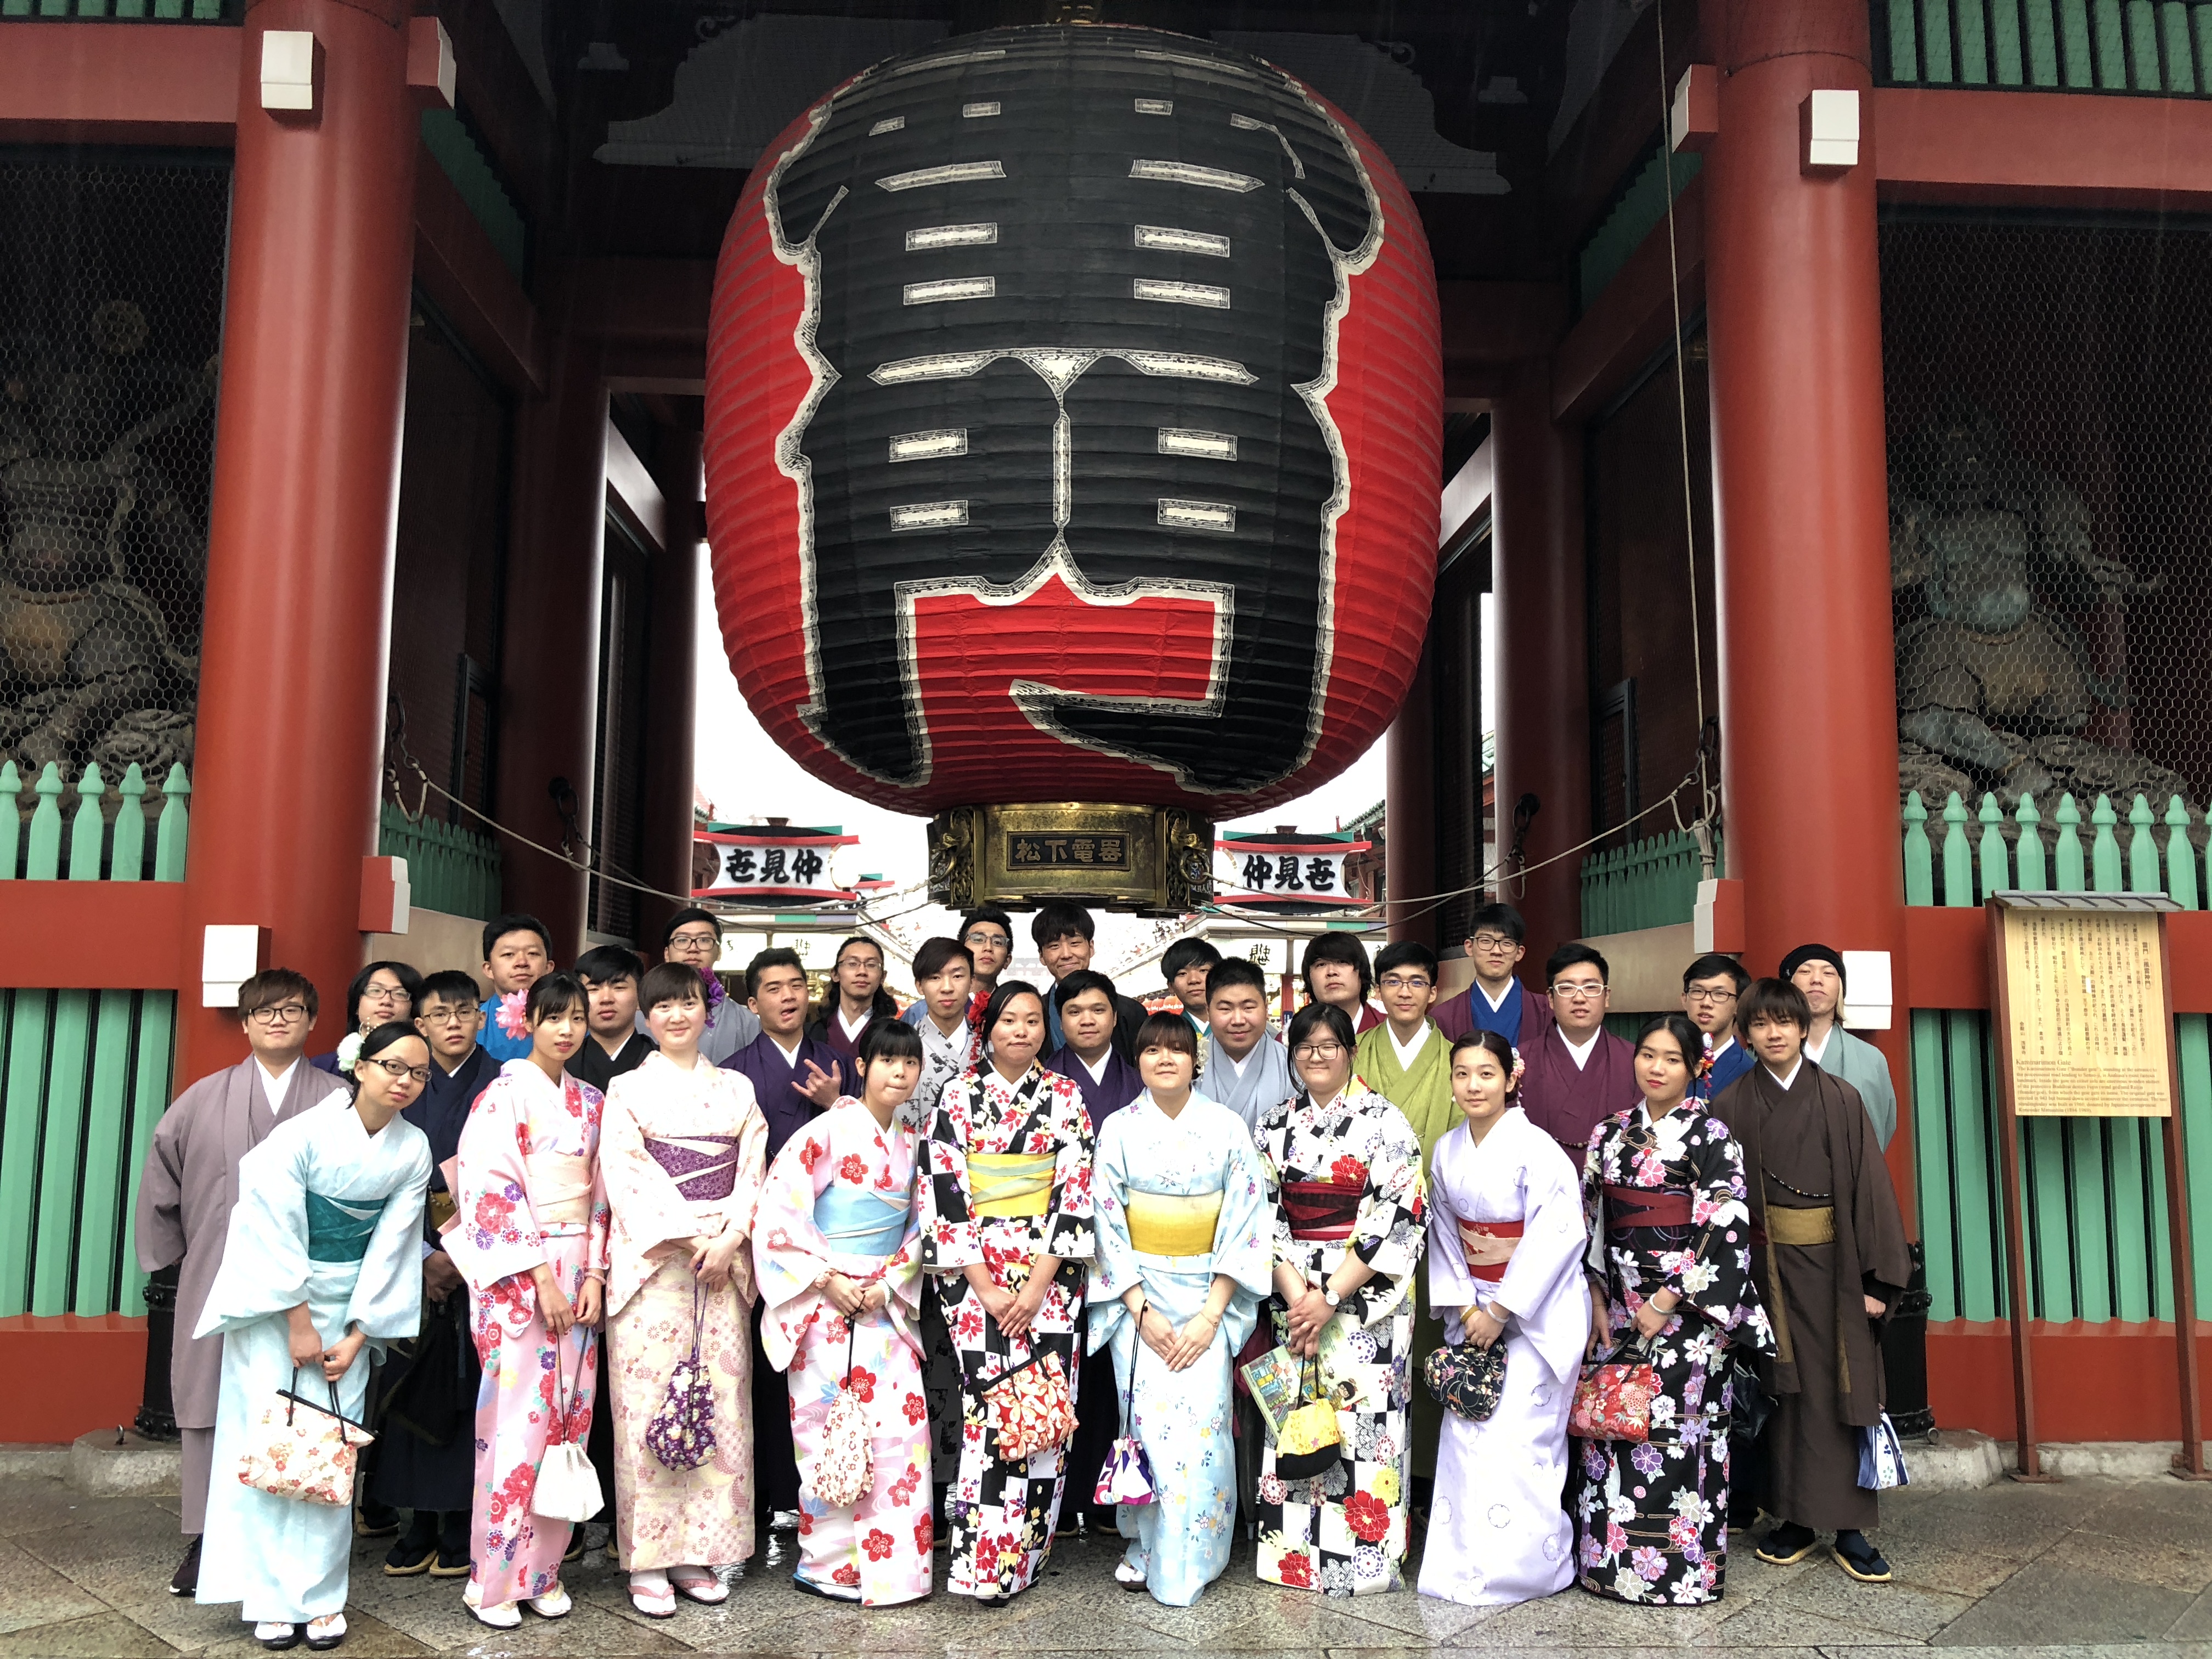 同学在日本透过参观有宗教文化特色的神社、穿著浴衣等，亲身理解日本人的传统文化及习惯。